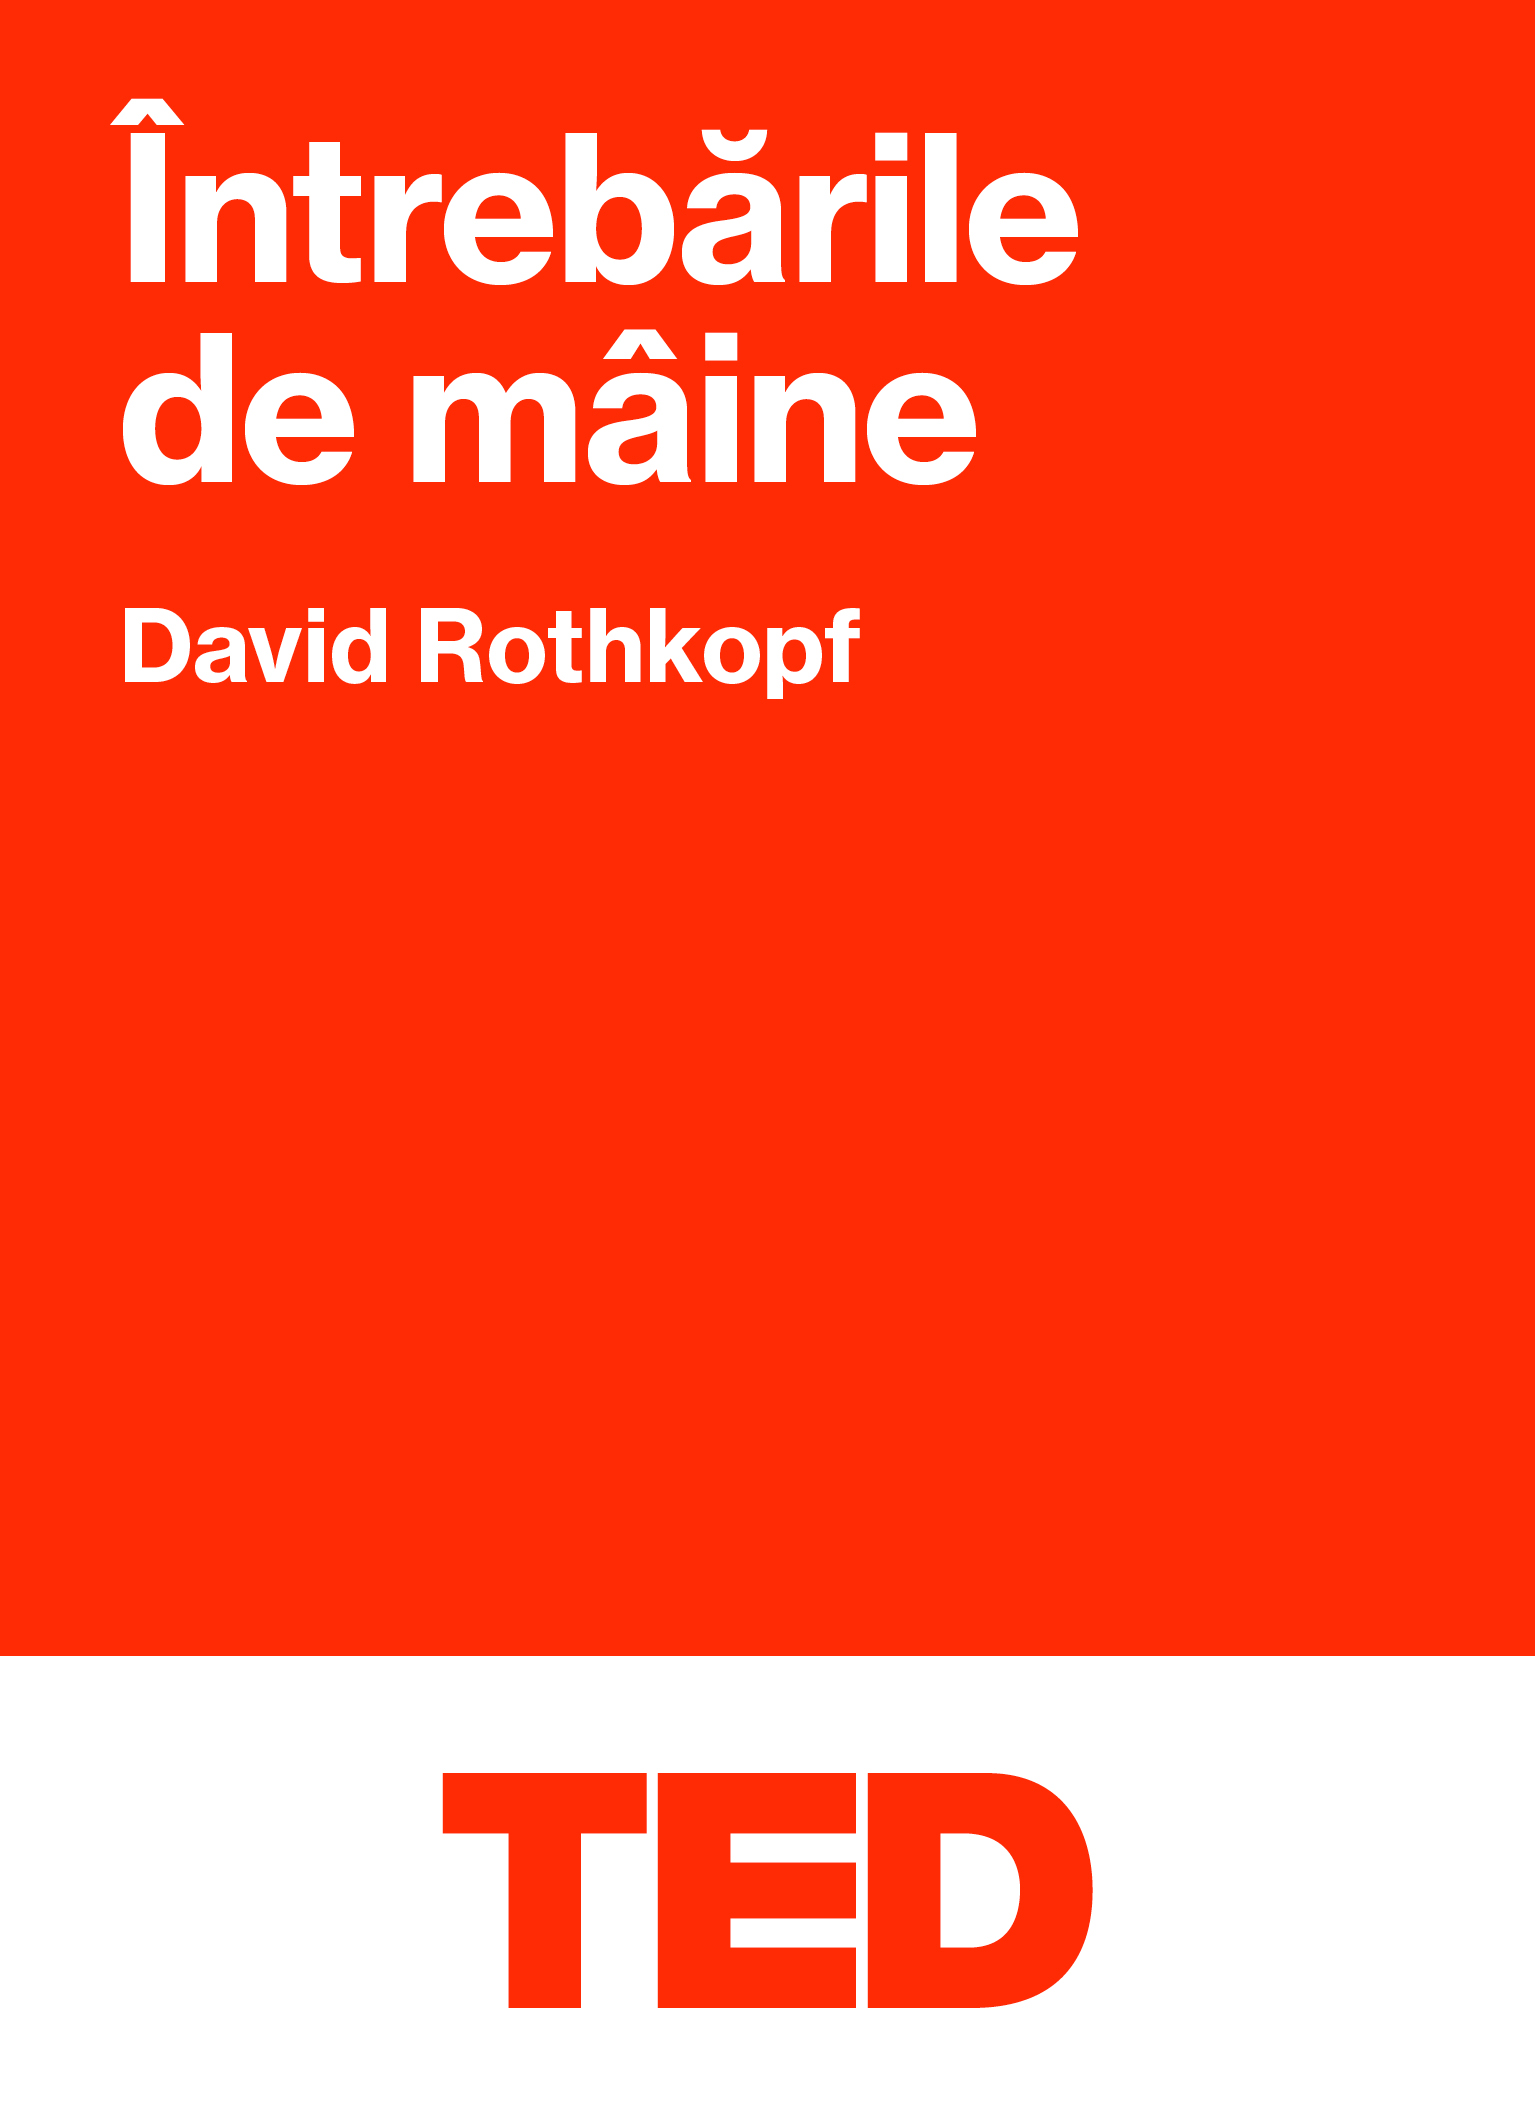 TED – Intrebarile de maine | David Rothkopf Black Button Books 2022